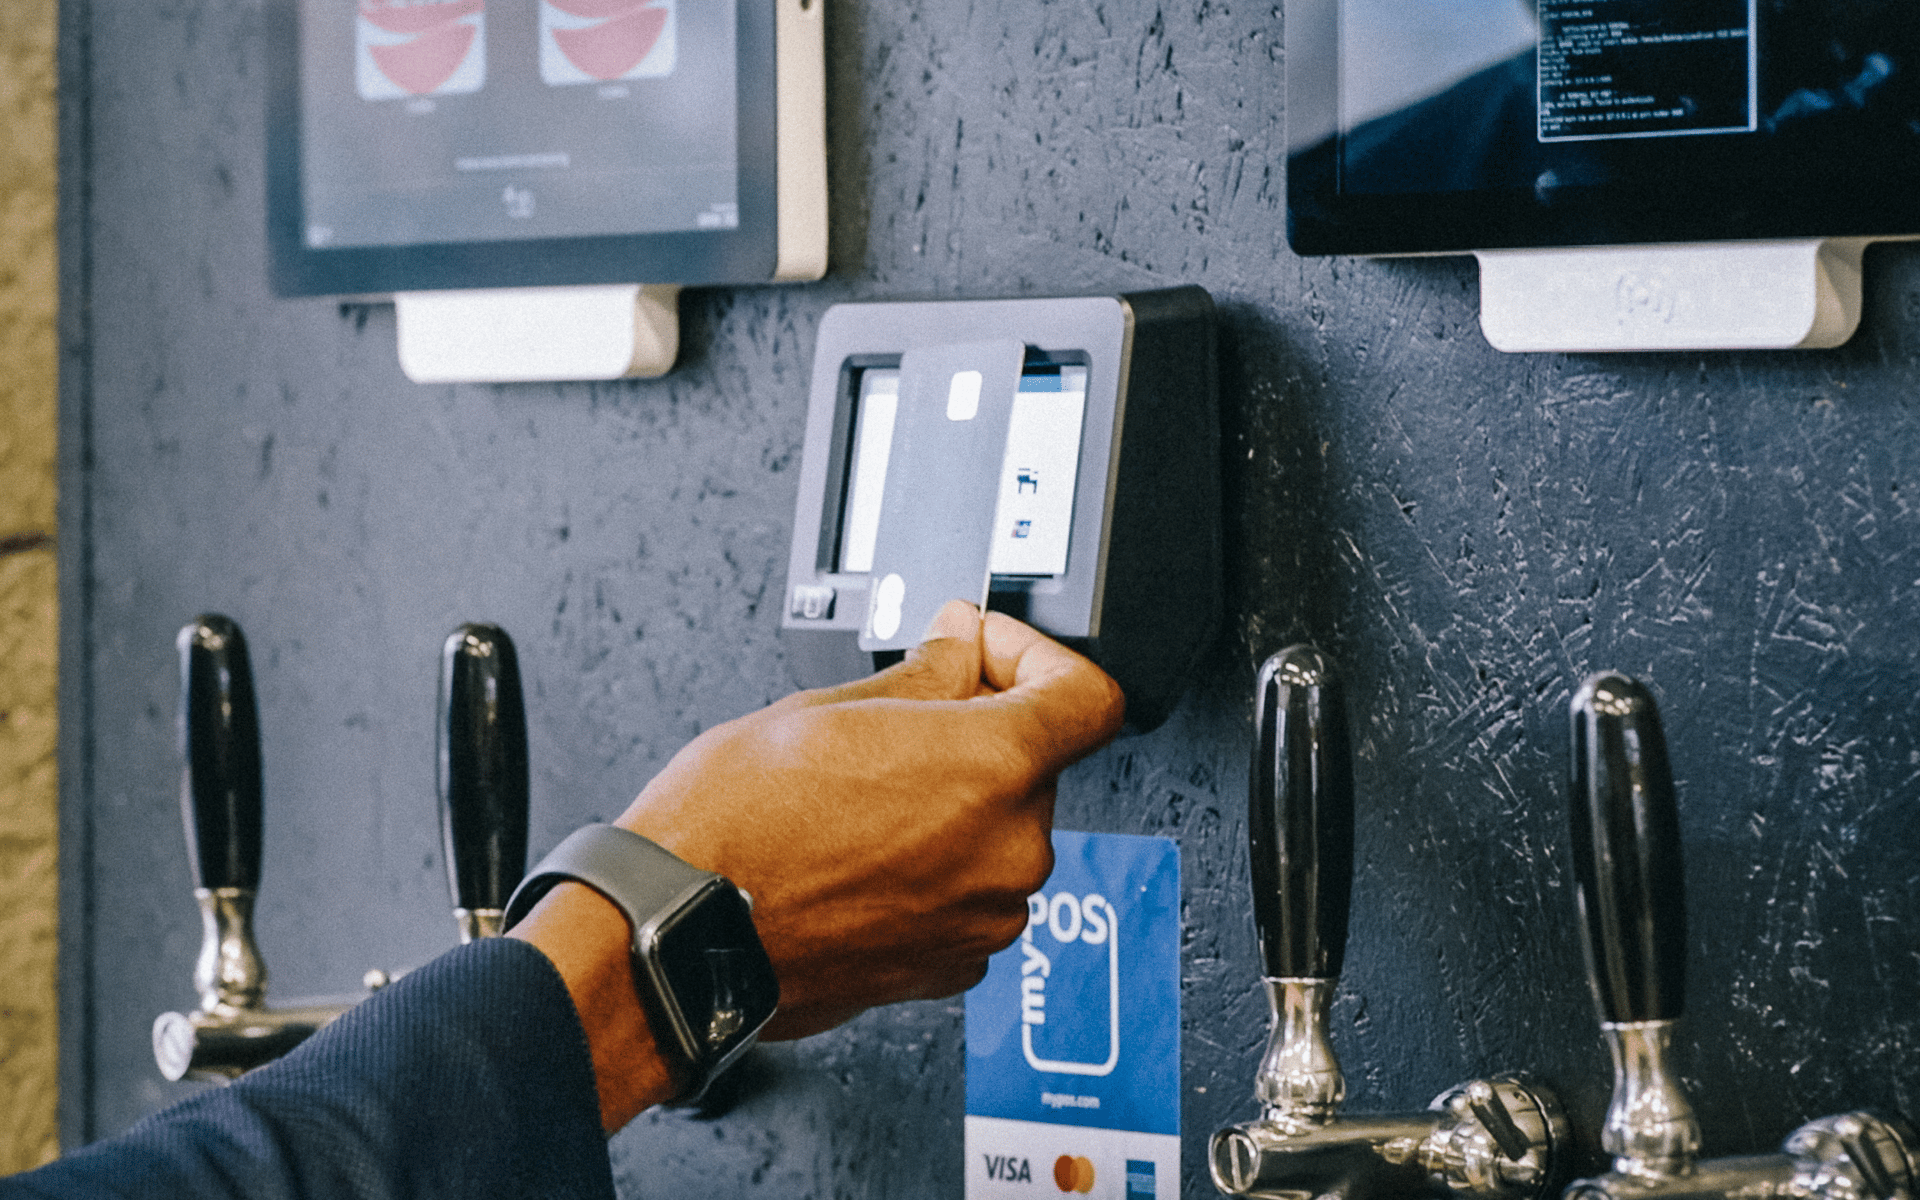 DRINKOTEC intègre le paiement par carte à ses systèmes de débit de boissons